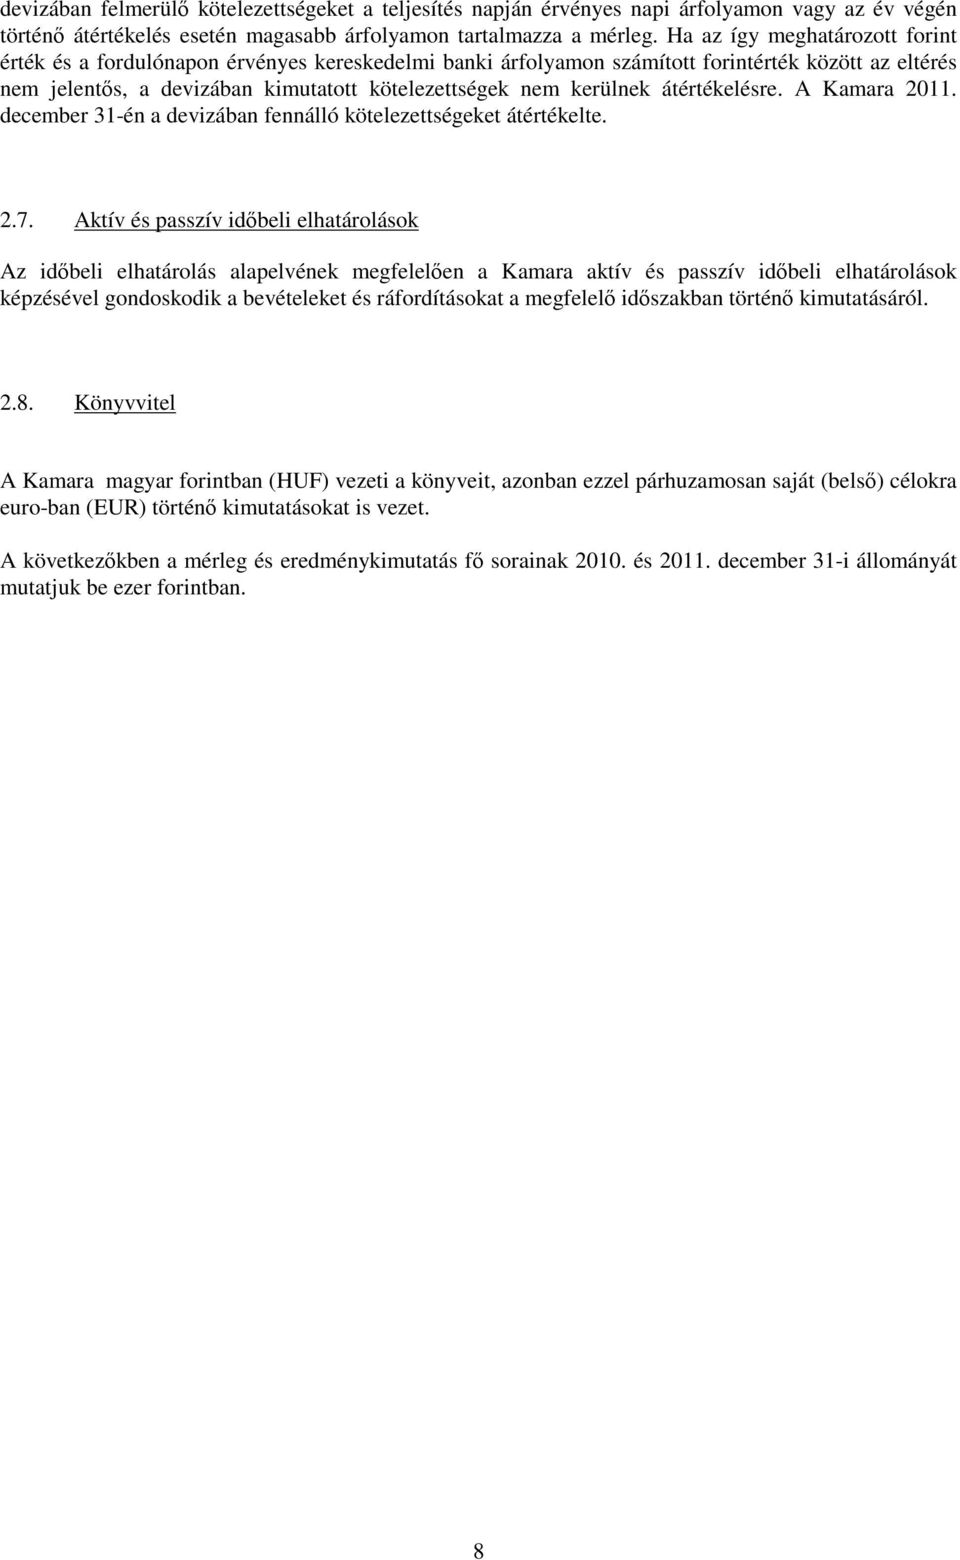 átértékelésre. A Kamara 2011. december 31-én a devizában fennálló kötelezettségeket átértékelte. 2.7.